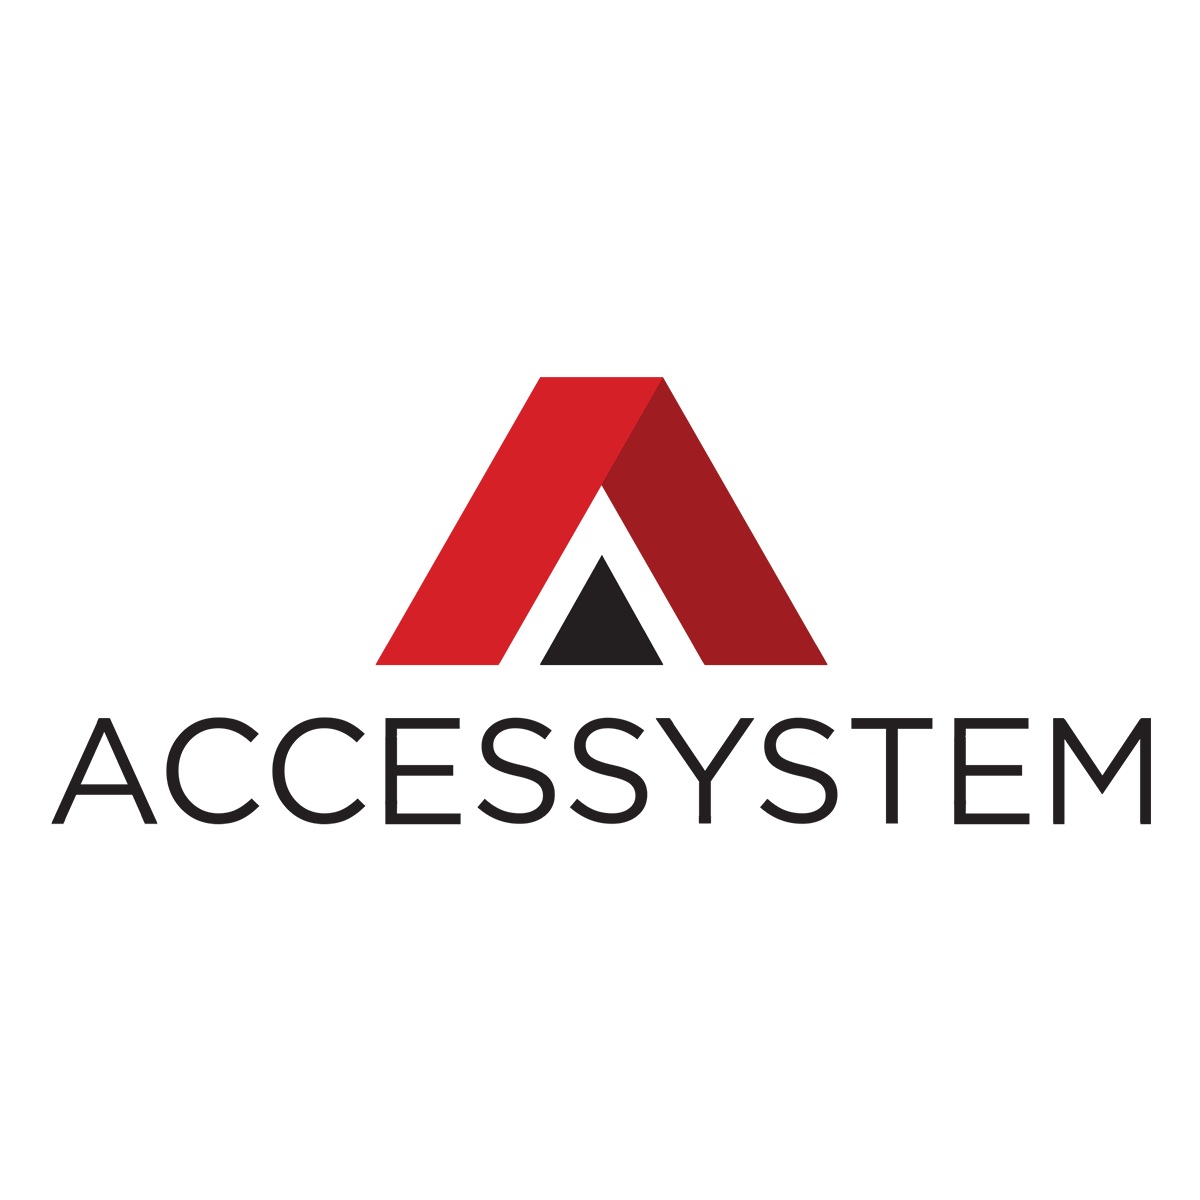 (c) Accessystem.com